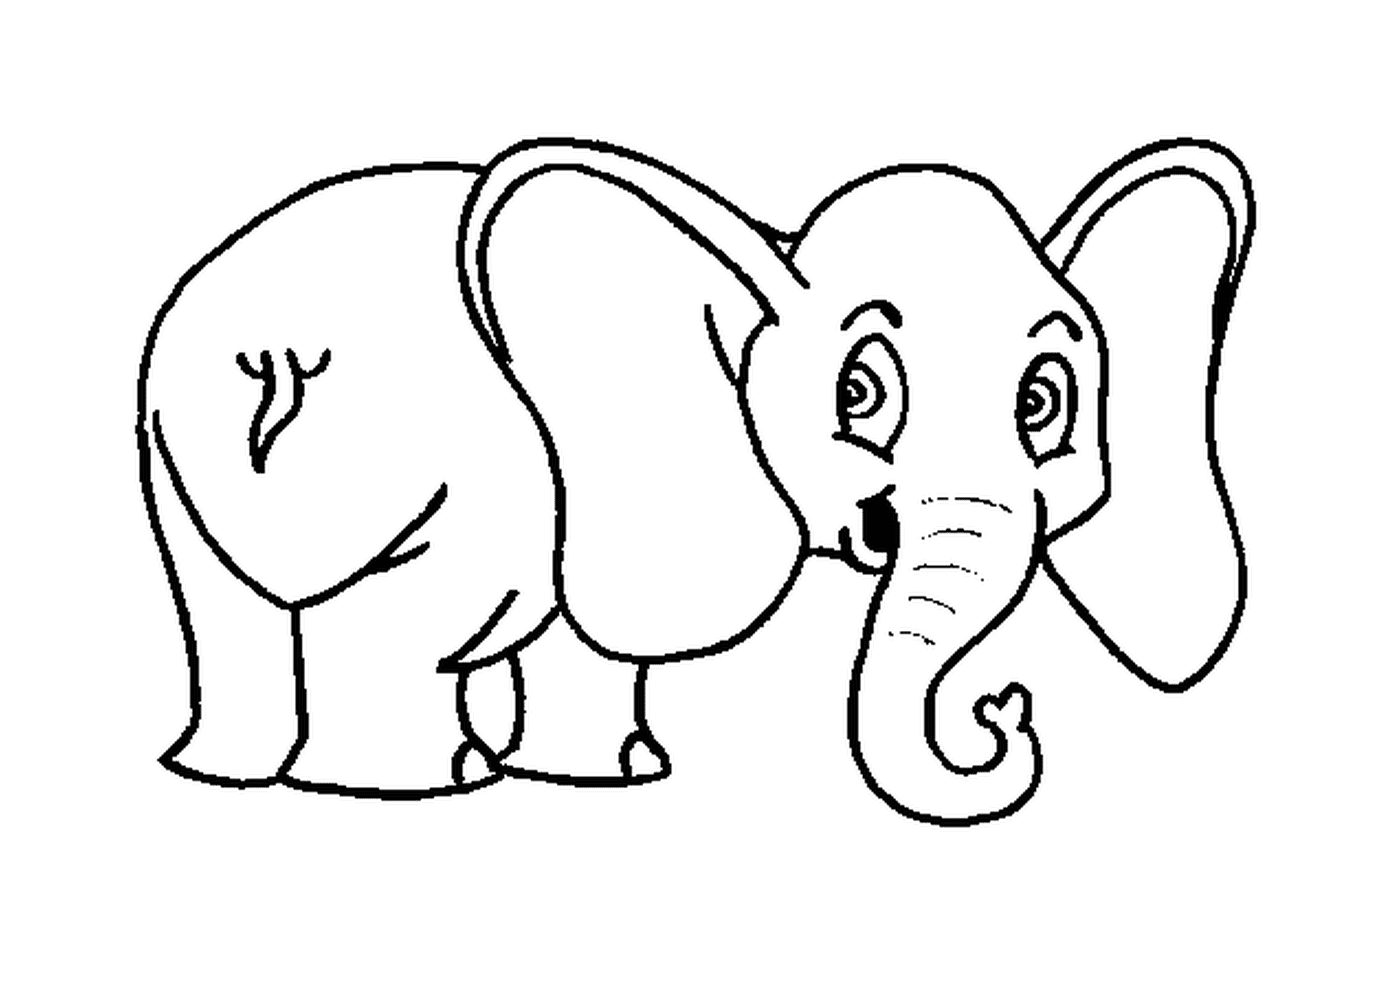  Un elefante disegnato con grandi orecchie 